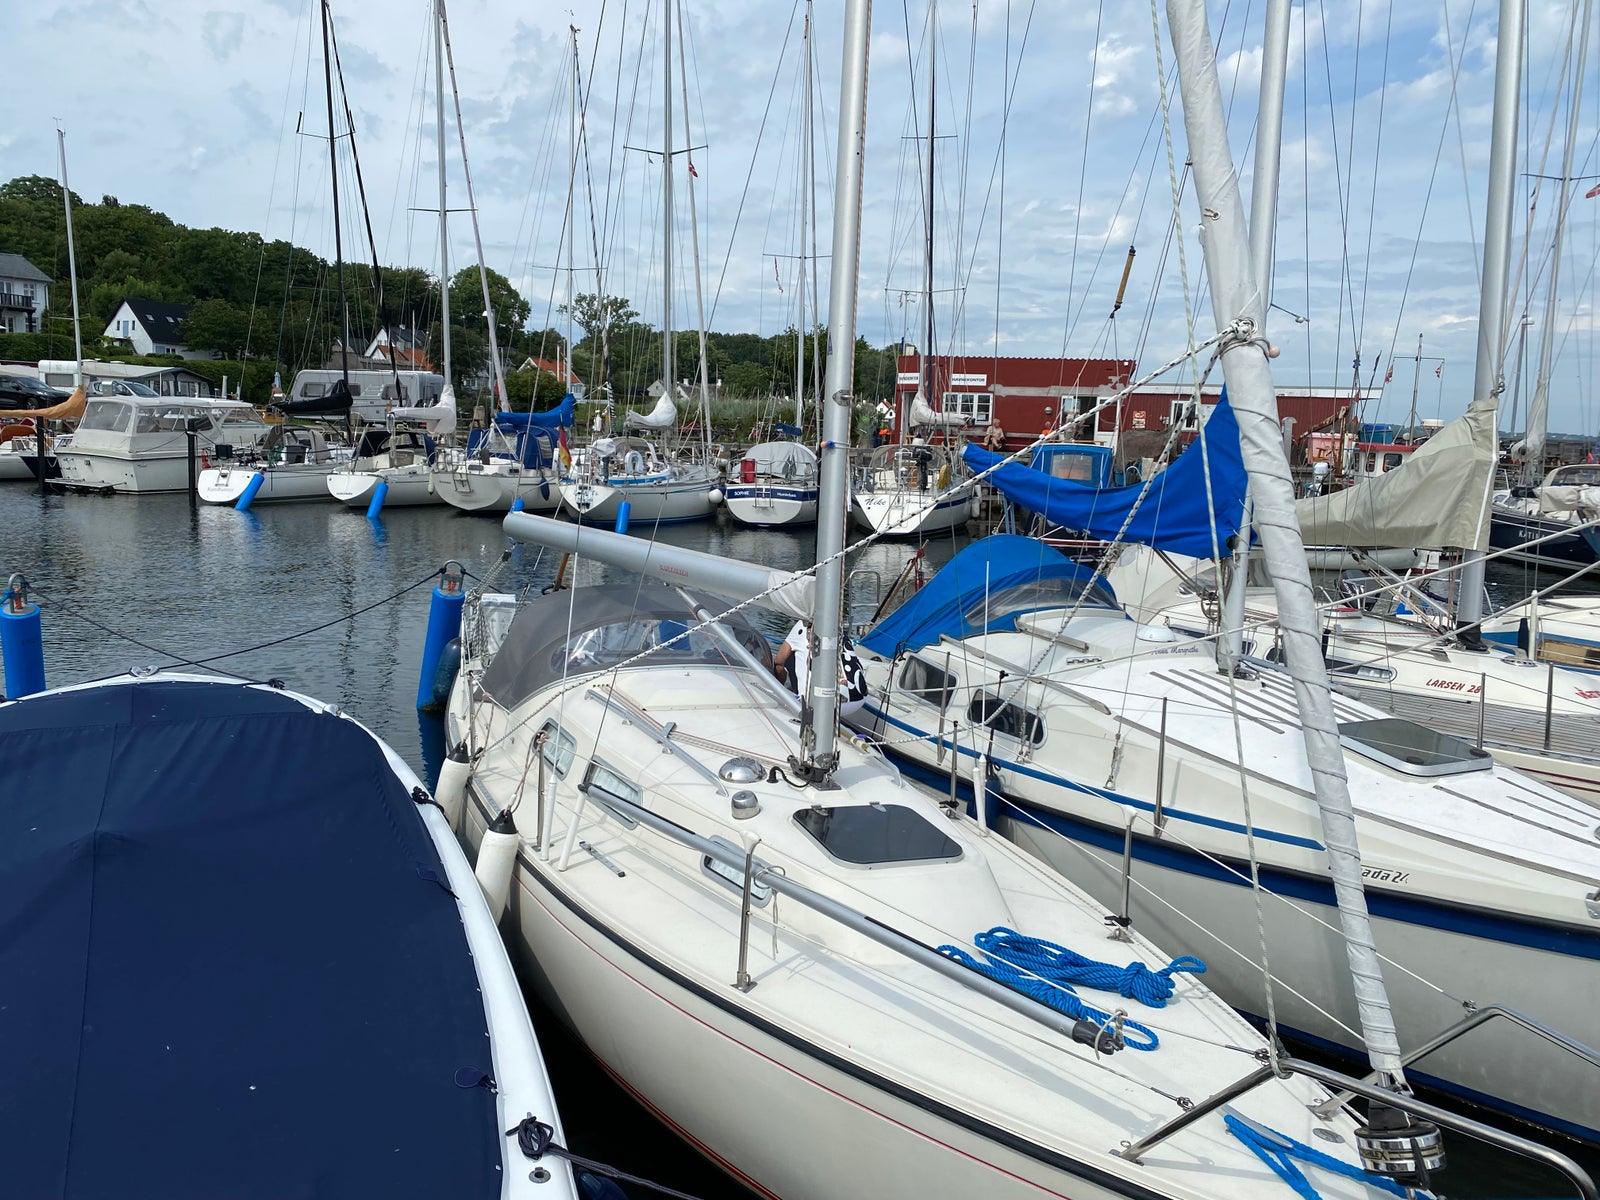 Sejlbåd med bådplads i Øresund